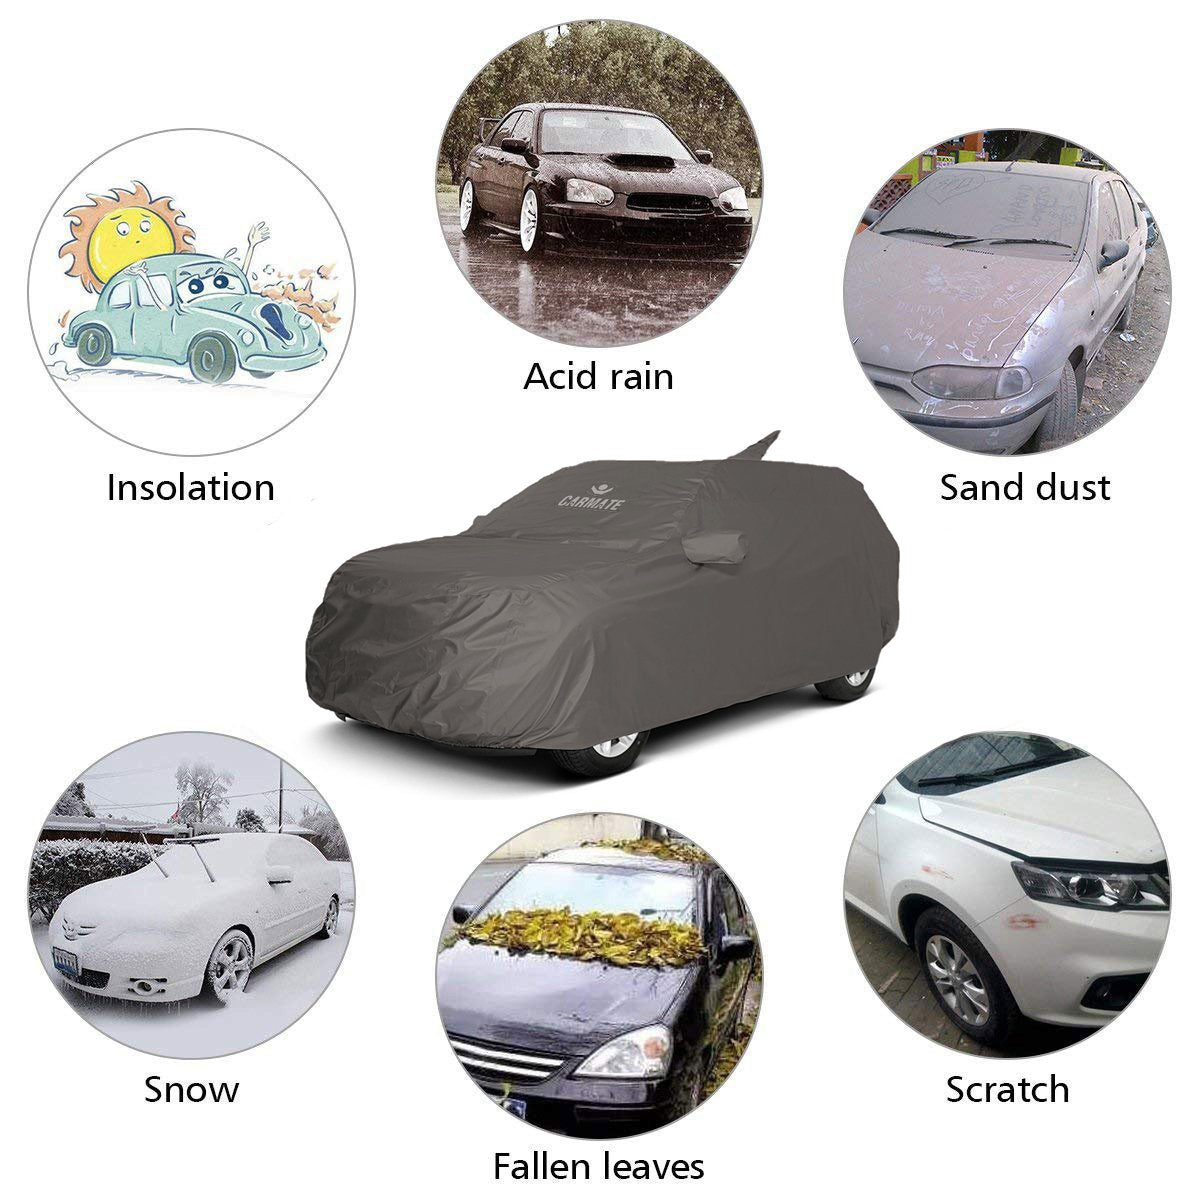 Carmate Car Body Cover 100% Waterproof Pride (Grey) for Renault - Triber - CARMATE®